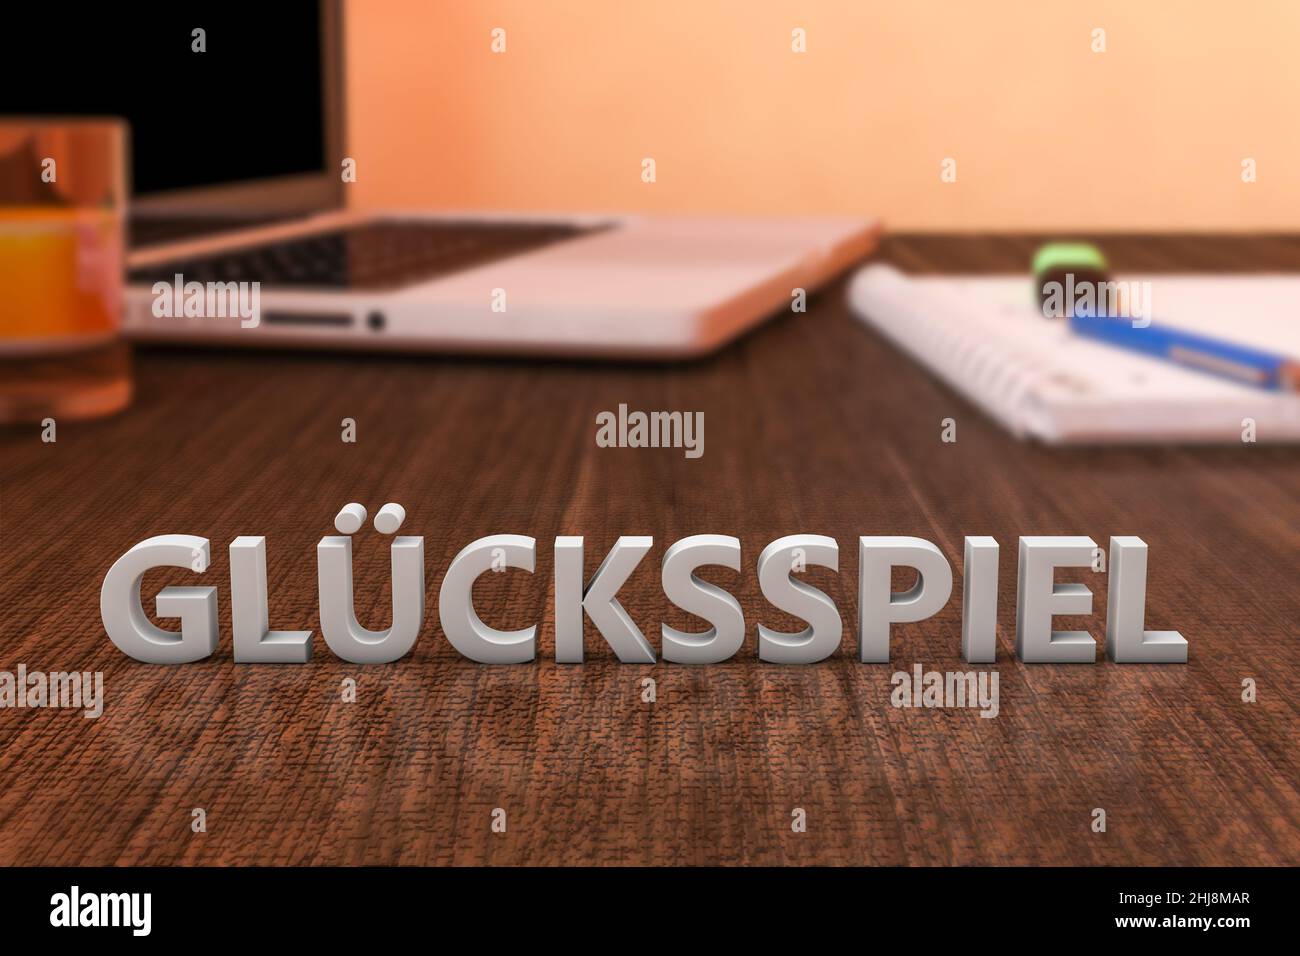 Gluecksspiel - parola tedesca per il gioco d'azzardo o il gioco d'azzardo - lettere su scrivania in legno con computer portatile e un notebook. 3d rappresentazione illustrazione. Foto Stock